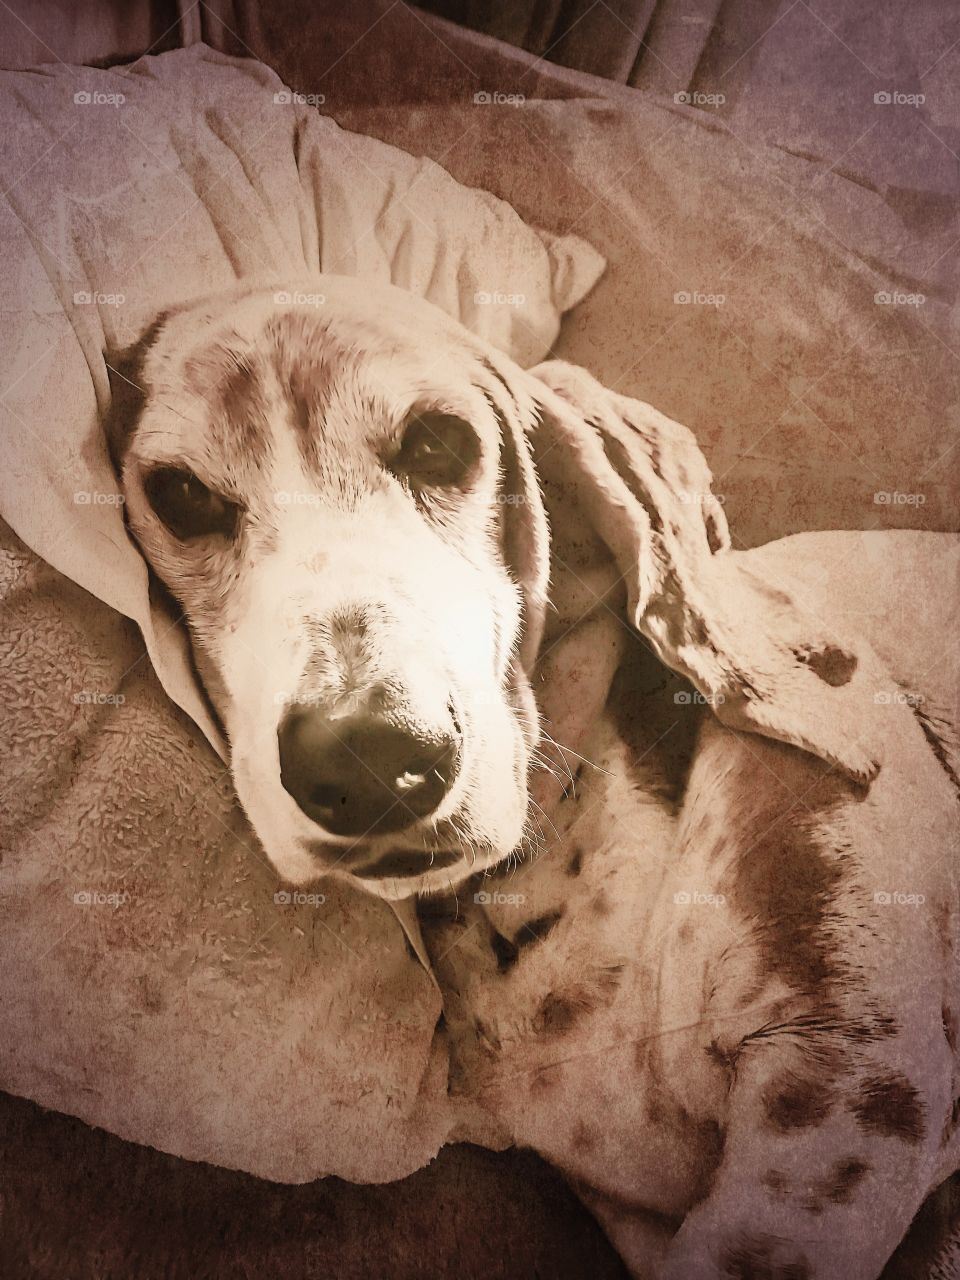 My senior Basset hound Cooper